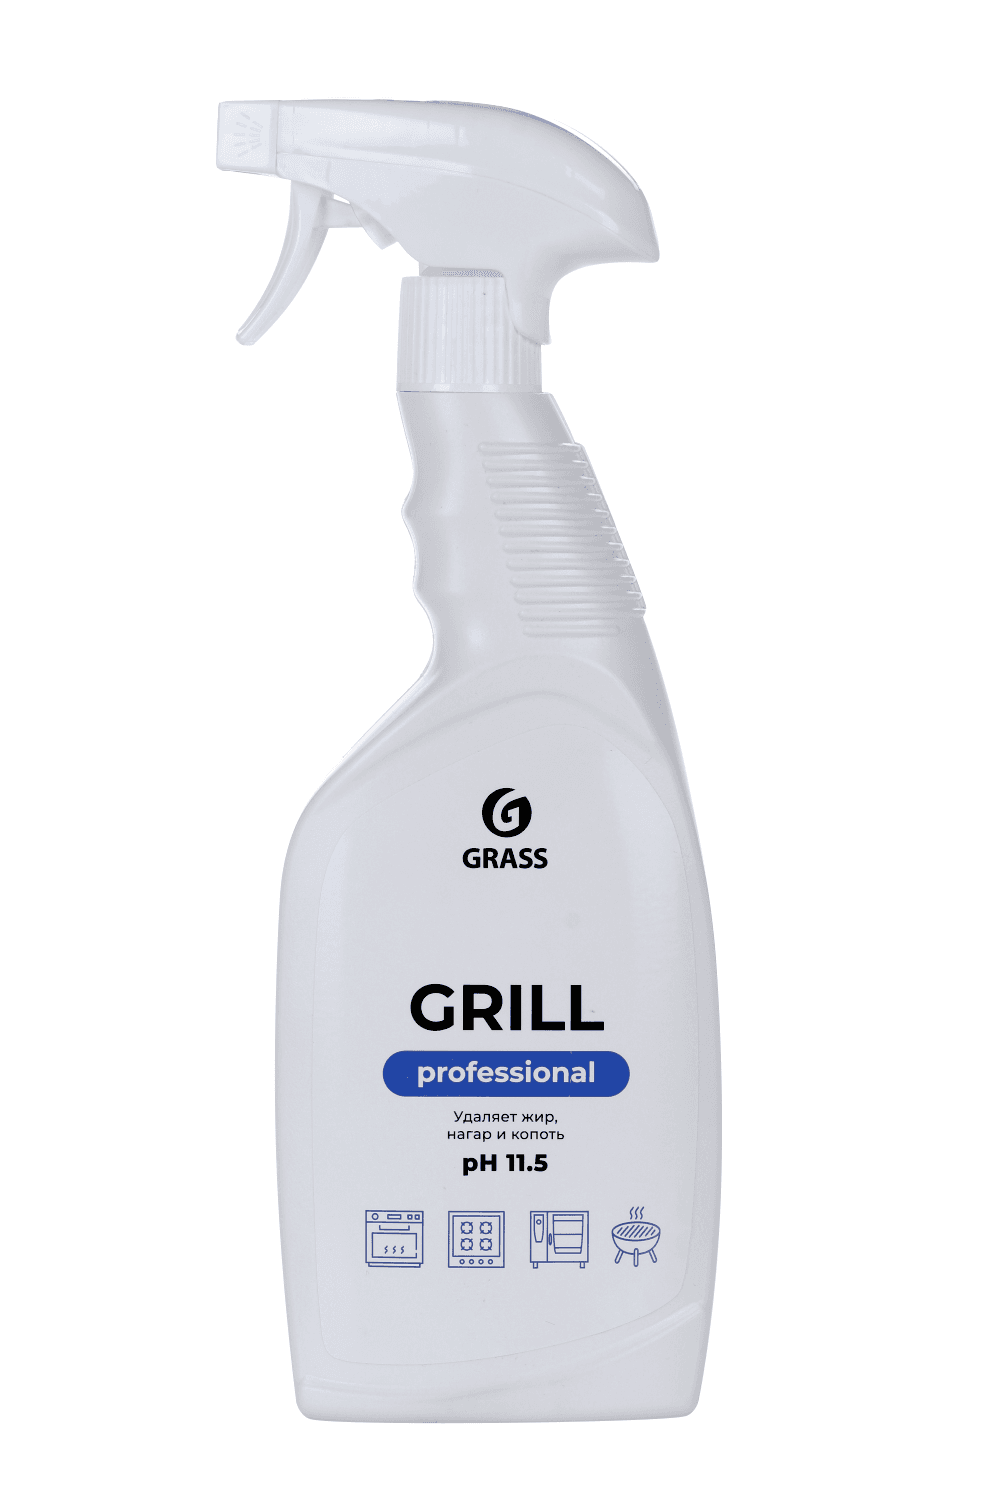 Чистящее средство GRASS Grill д/удаления жира/нагара/копоти pH 11,5 600 мл